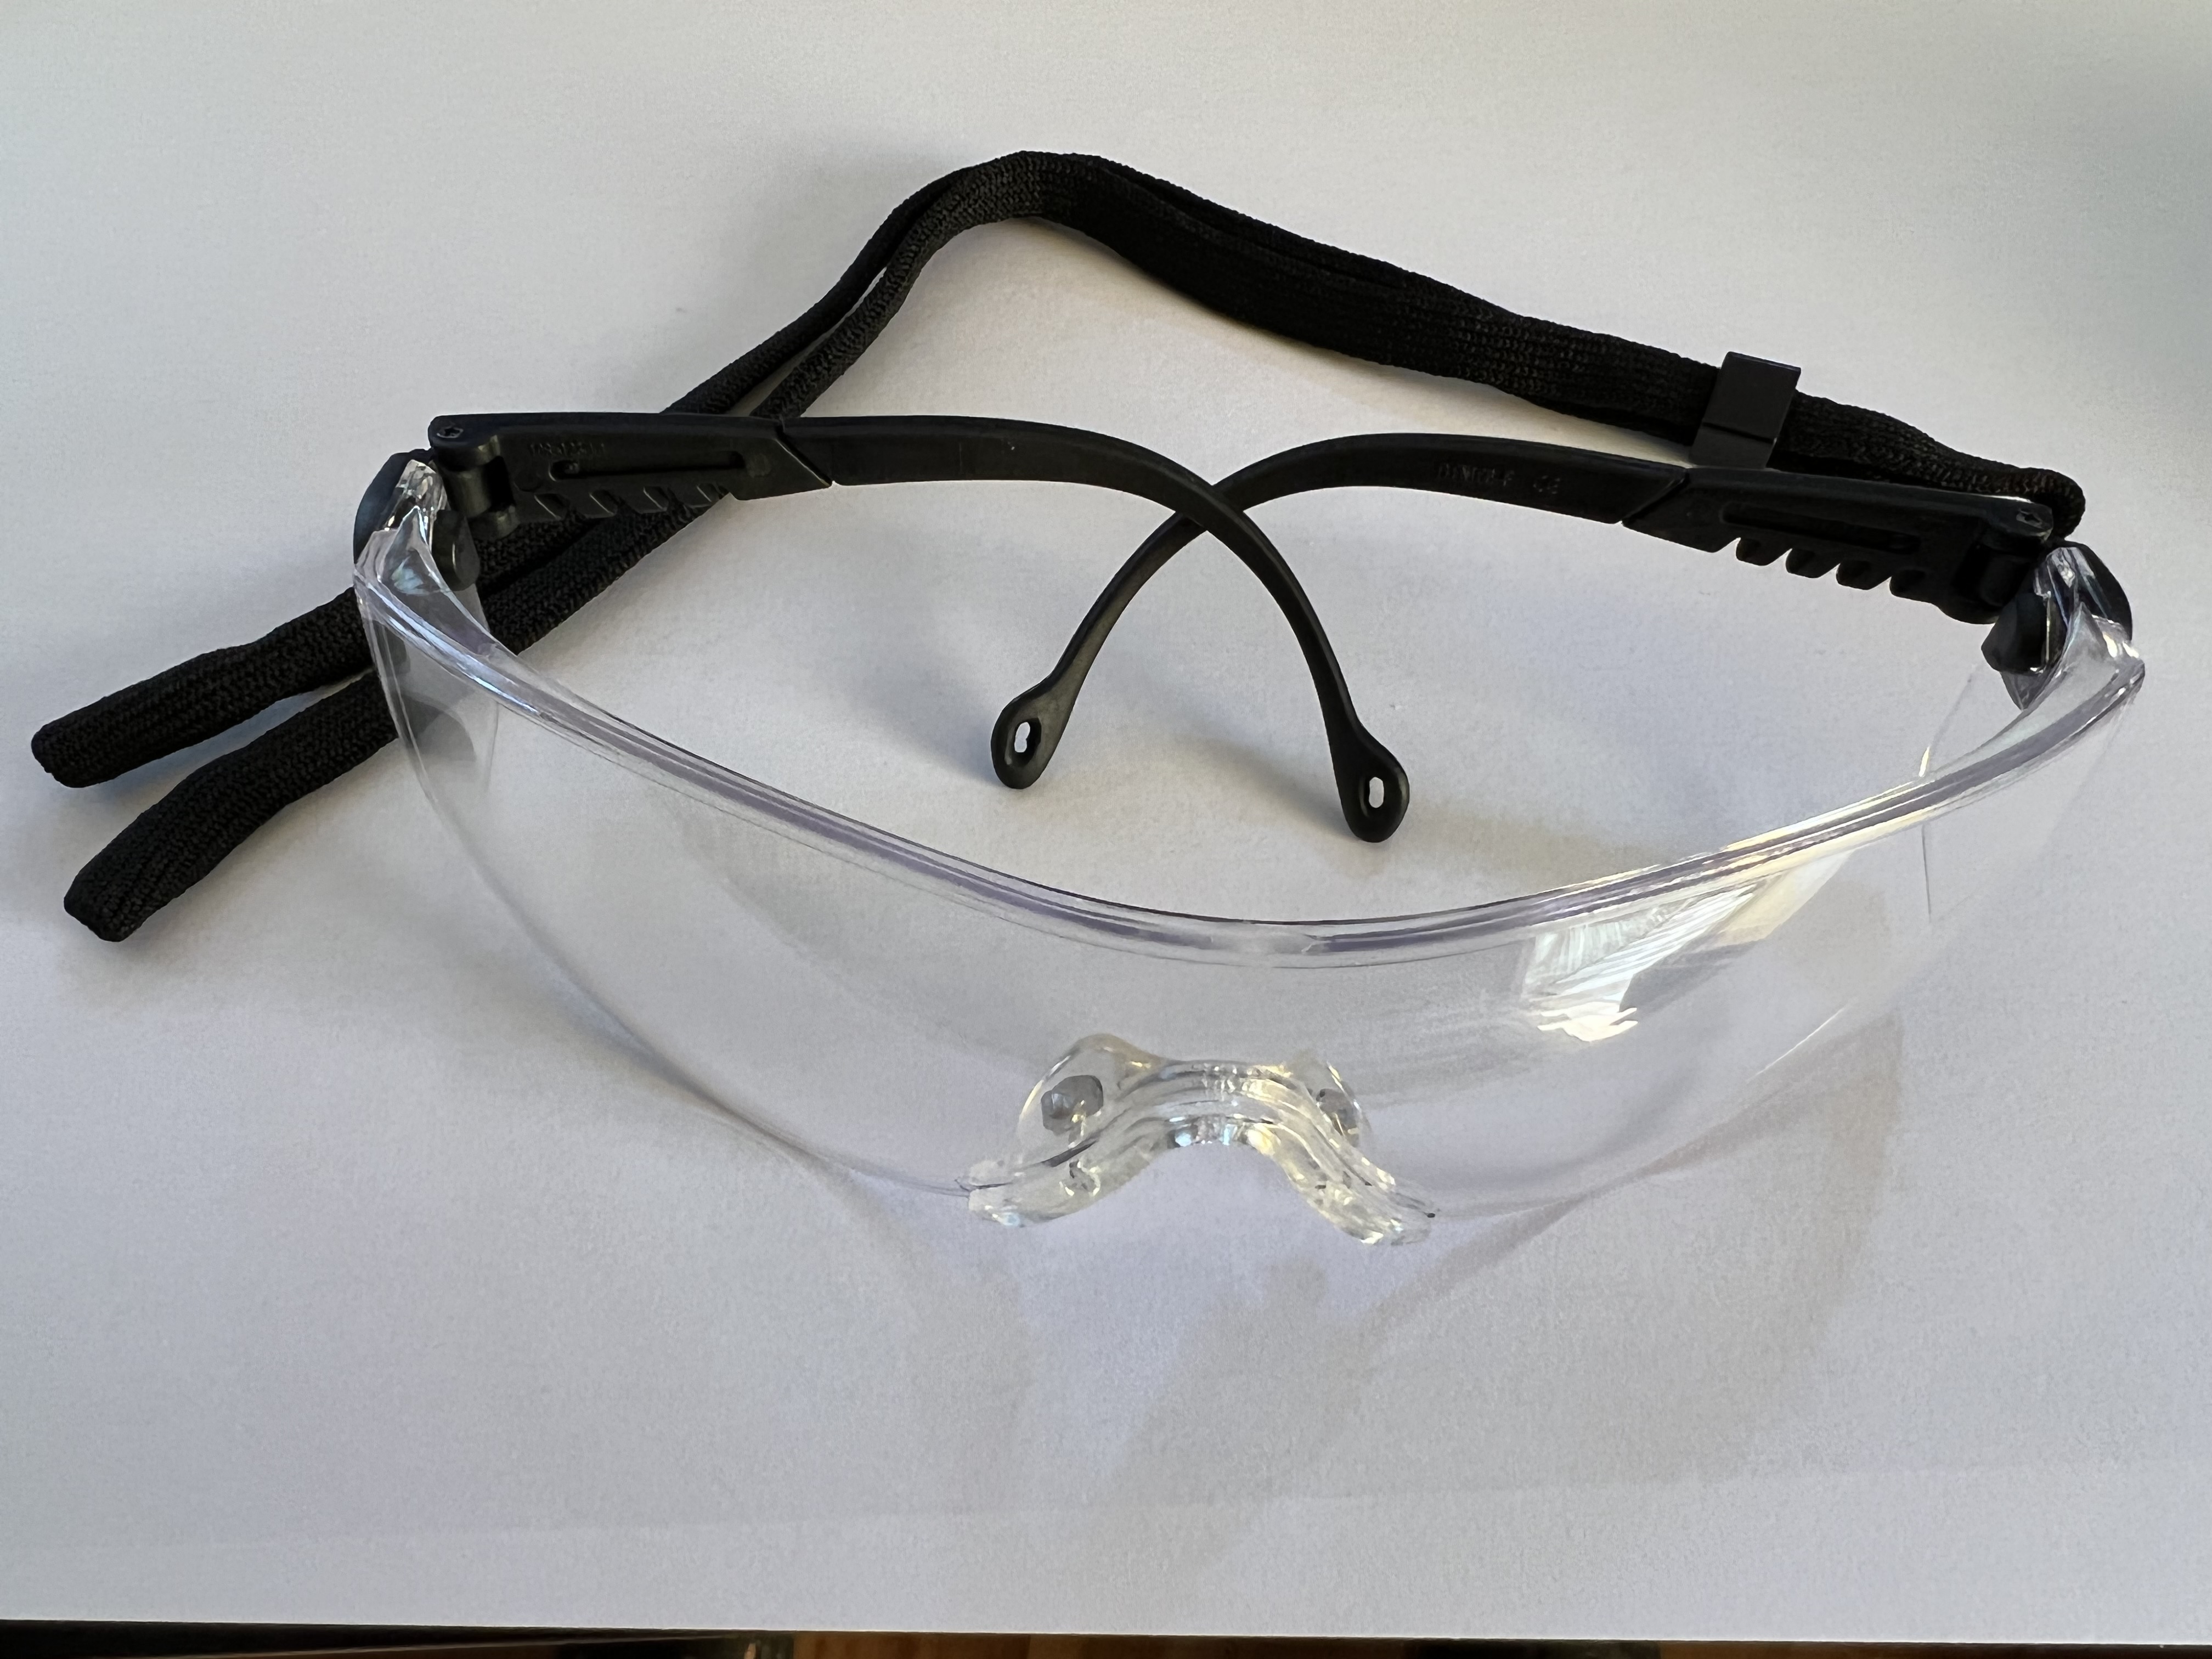 Honeywell® Op-Tema™ 1000016 - Schutzbrille klar/schwarz